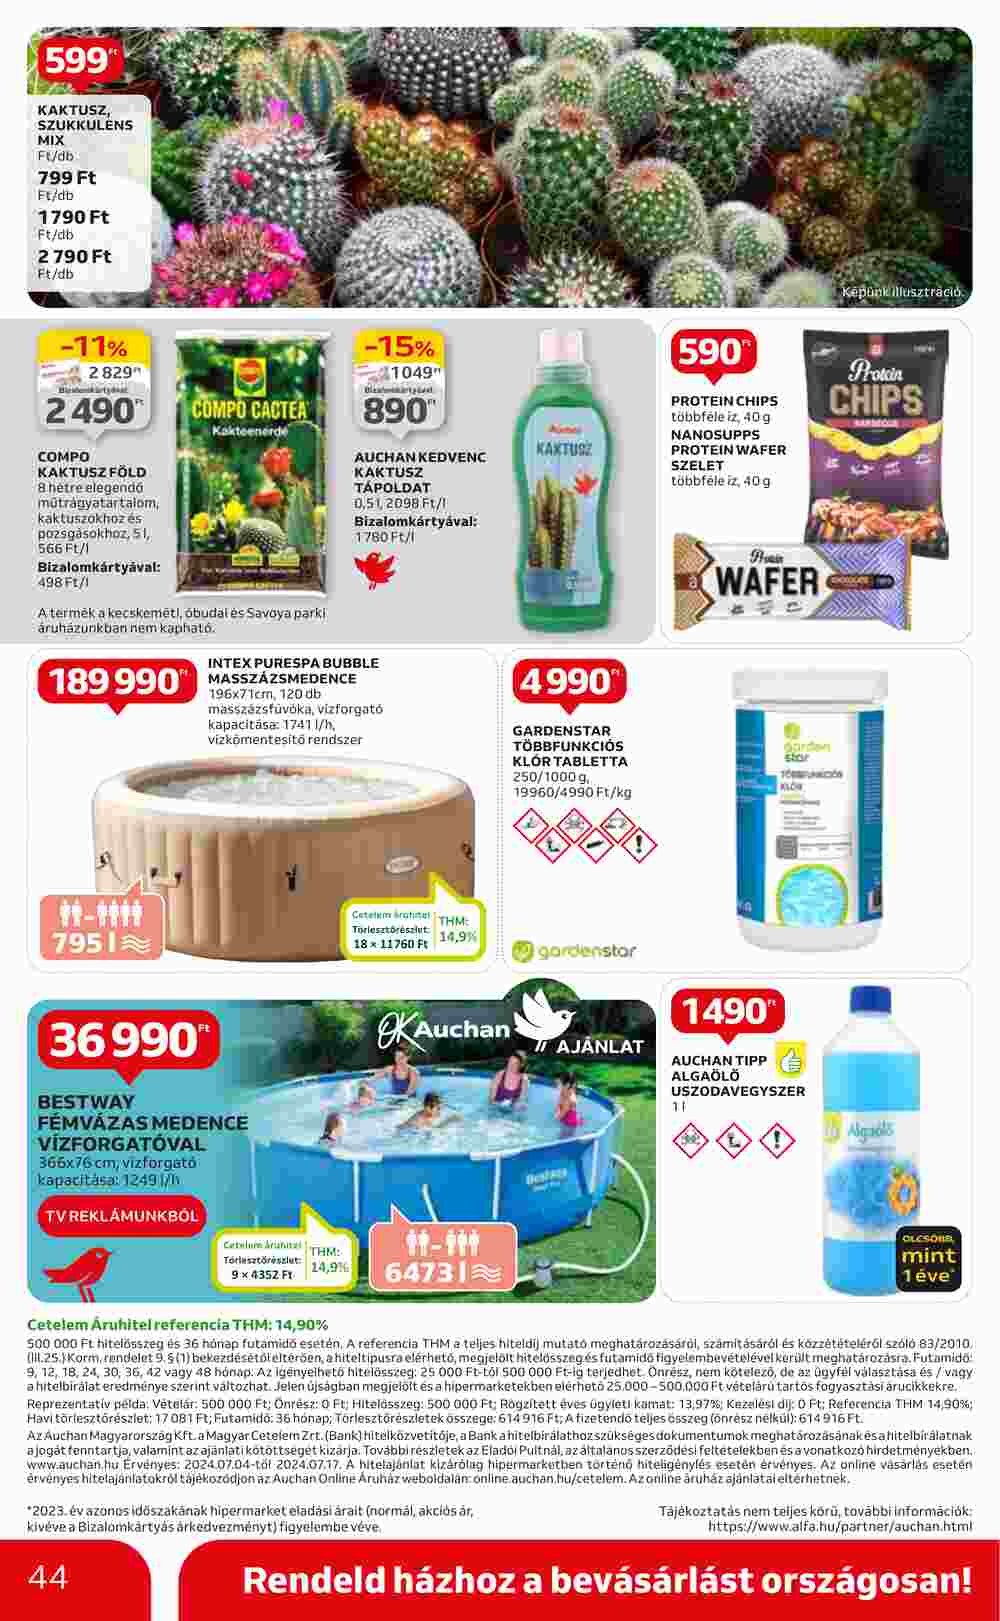 Auchan akciós újság 2024.07.04-től - 44. oldal.